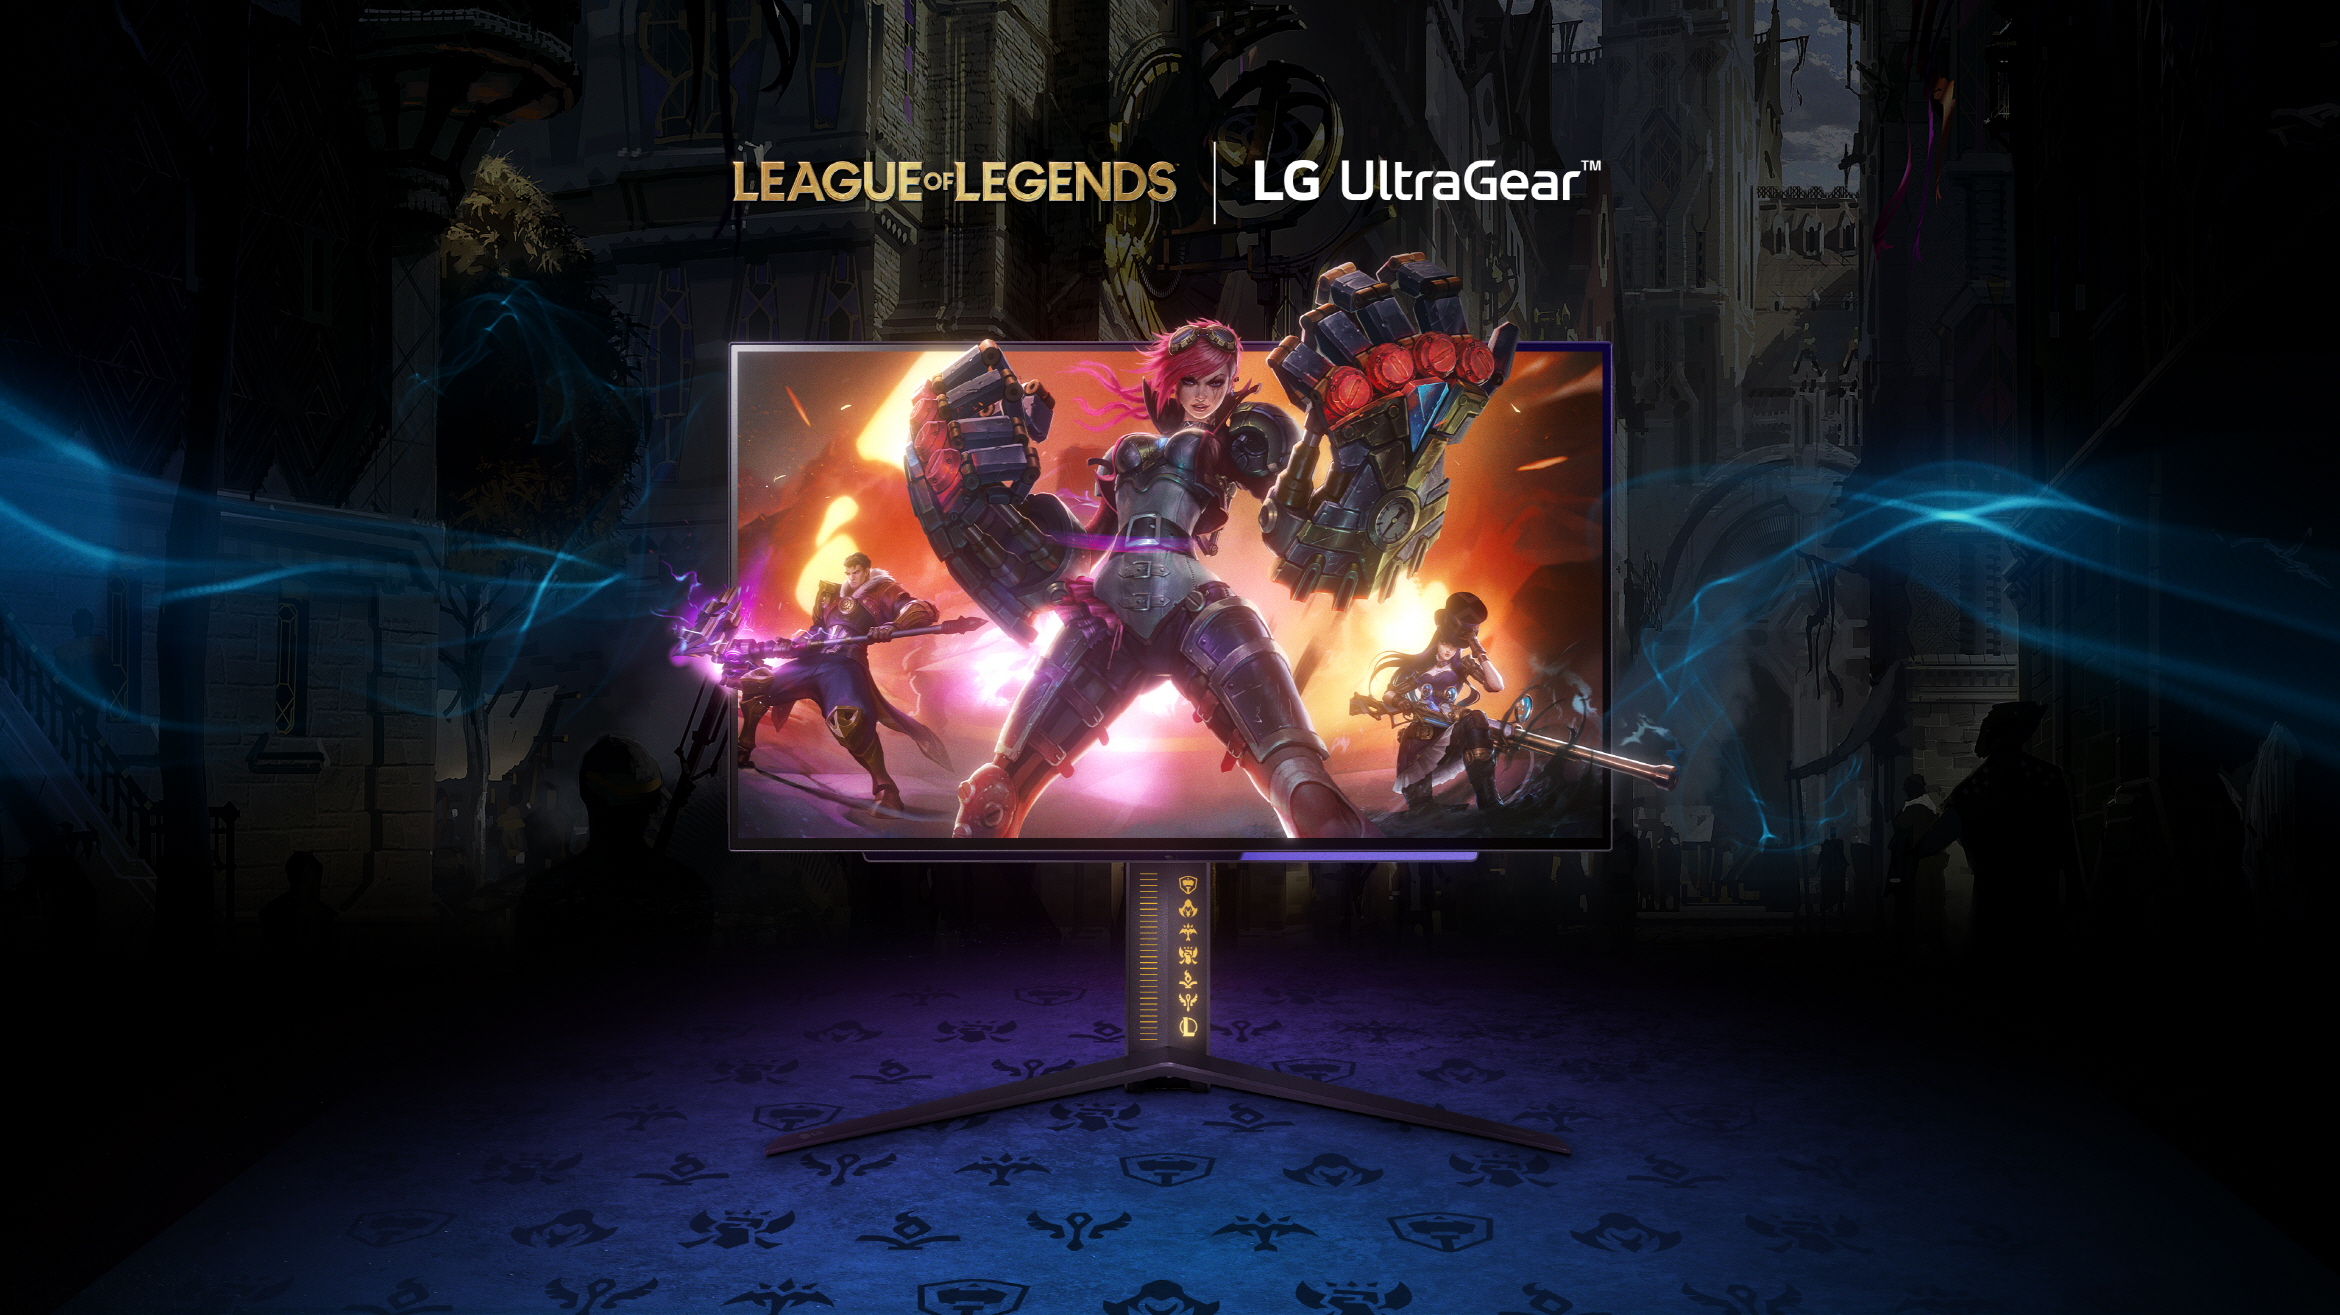 LG prezentuje monitor gamingowy UltraGear z limitowanej edycji „League of Legends”